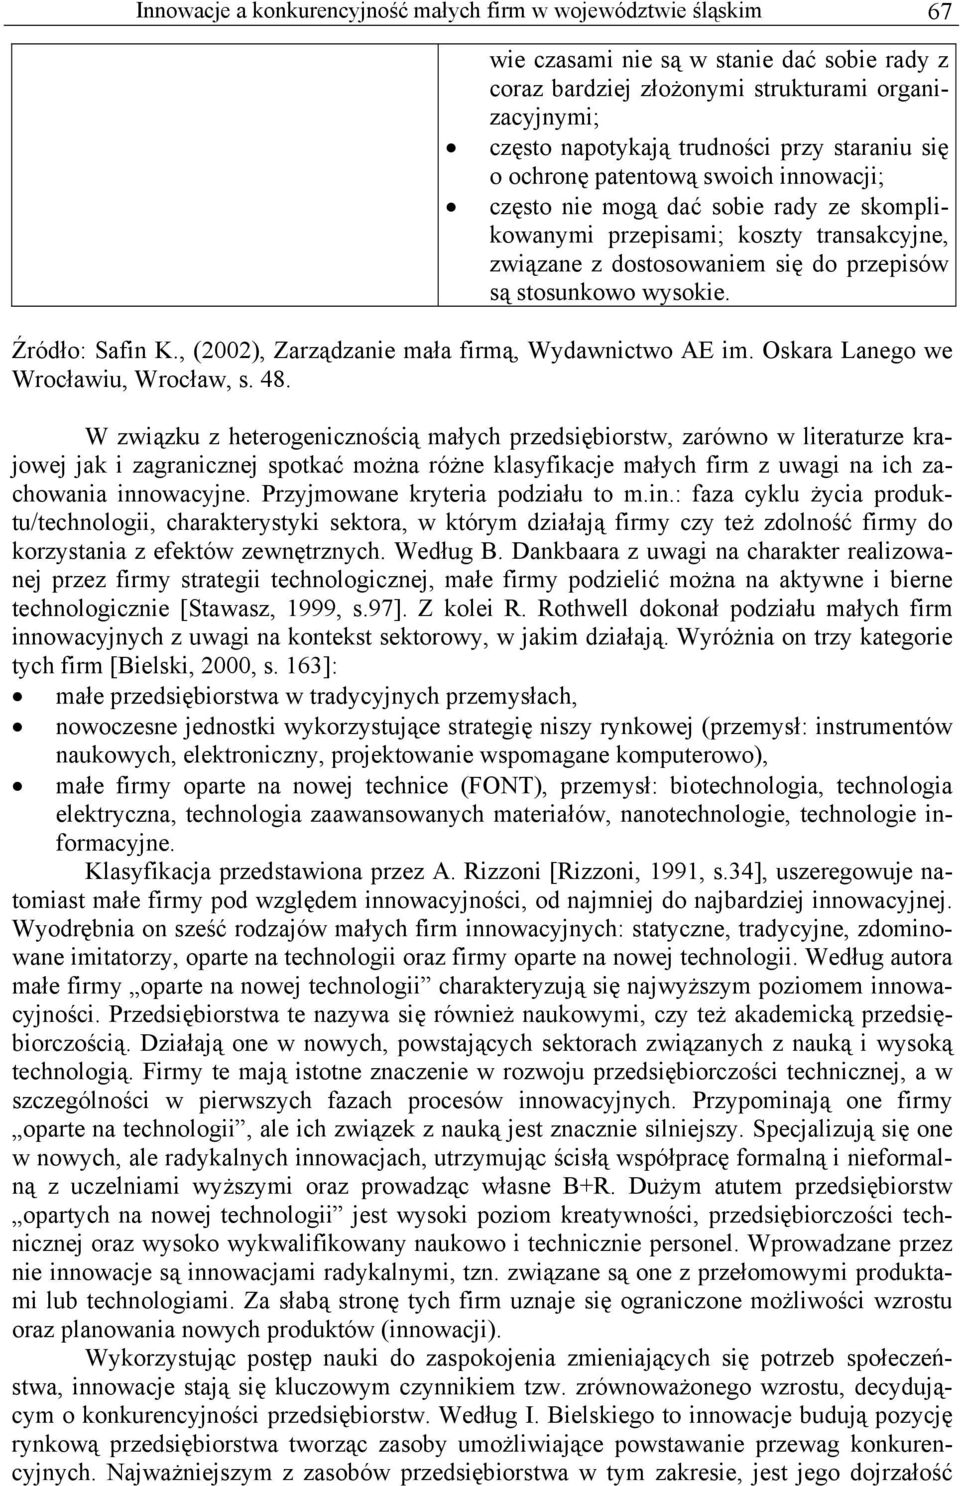 Źródło: Safin K., (2002), Zarządzanie mała firmą, Wydawnictwo AE im. Oskara Lanego we Wrocławiu, Wrocław, s. 48.